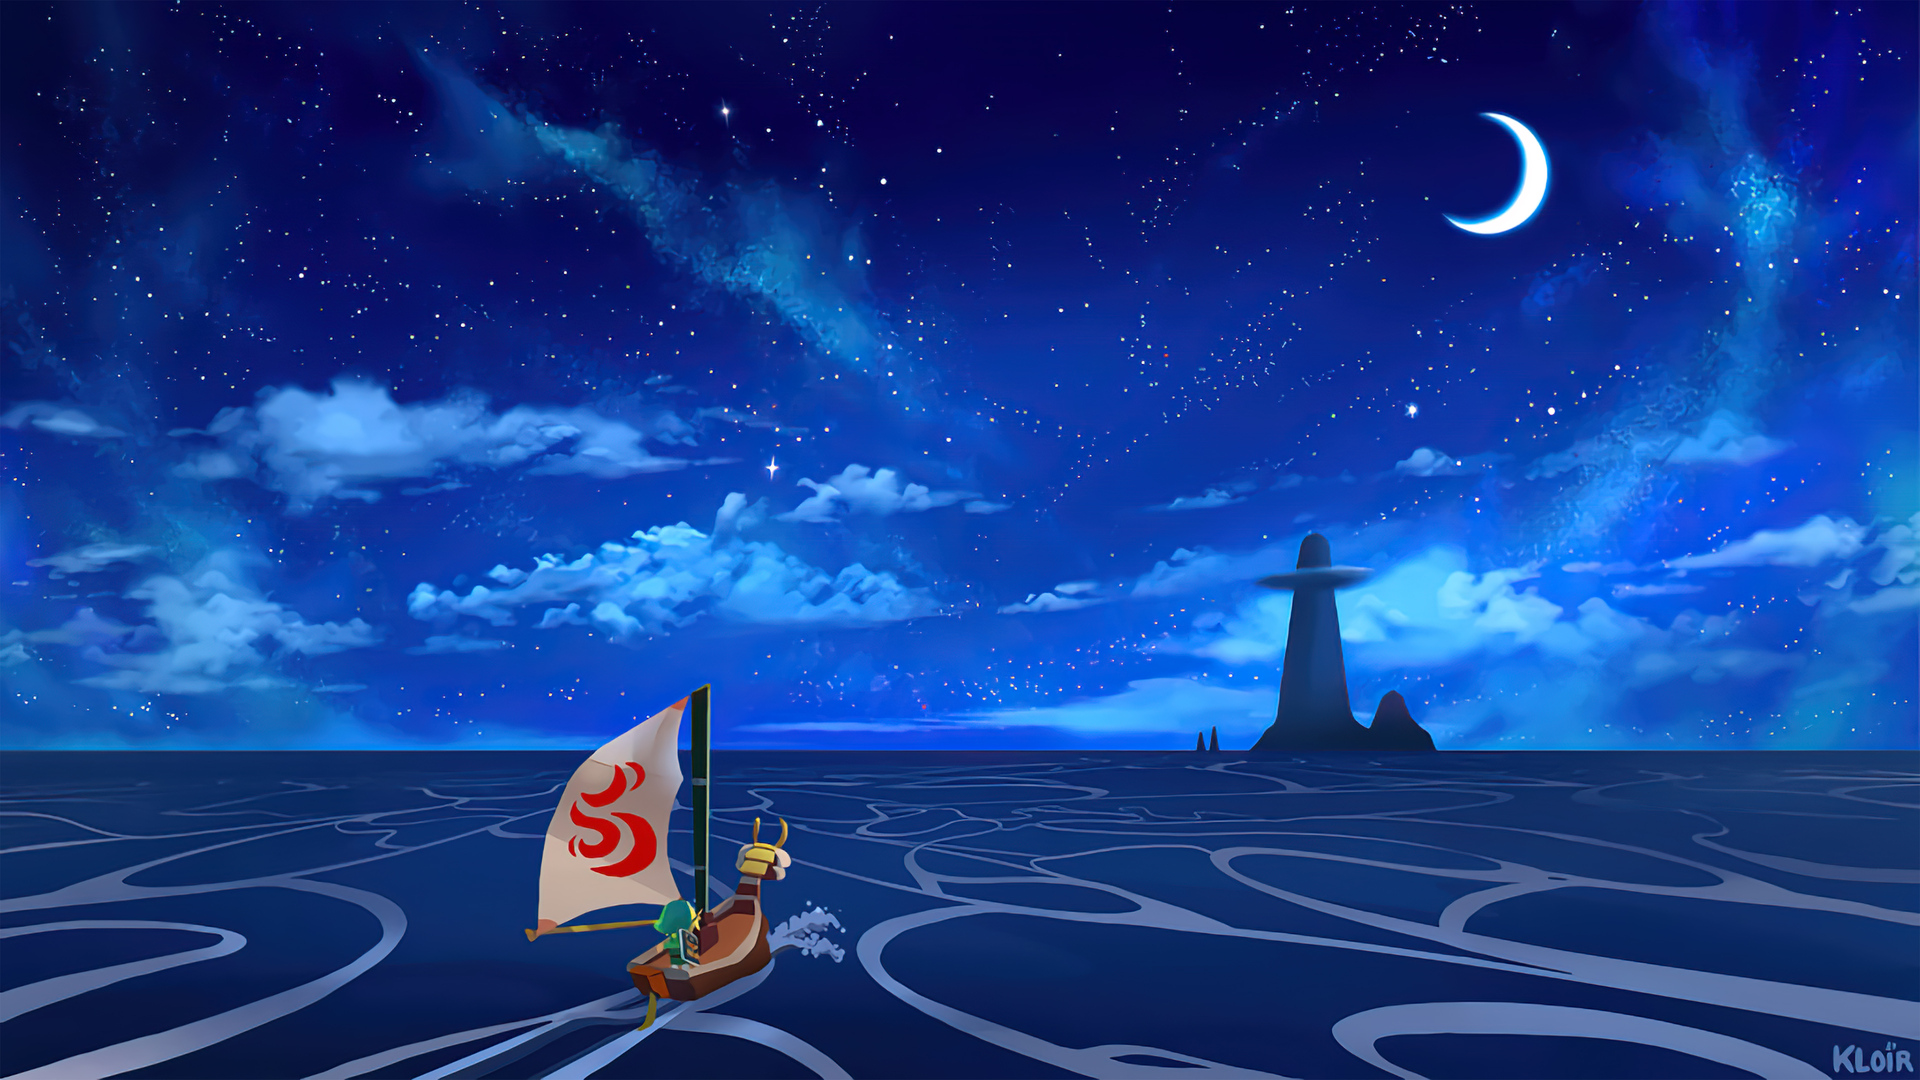 The Legend Of Zelda The Legend Of Zelda The Wind Waker Ocean View Night Island Stars Link Sailing Ki 1920x1080